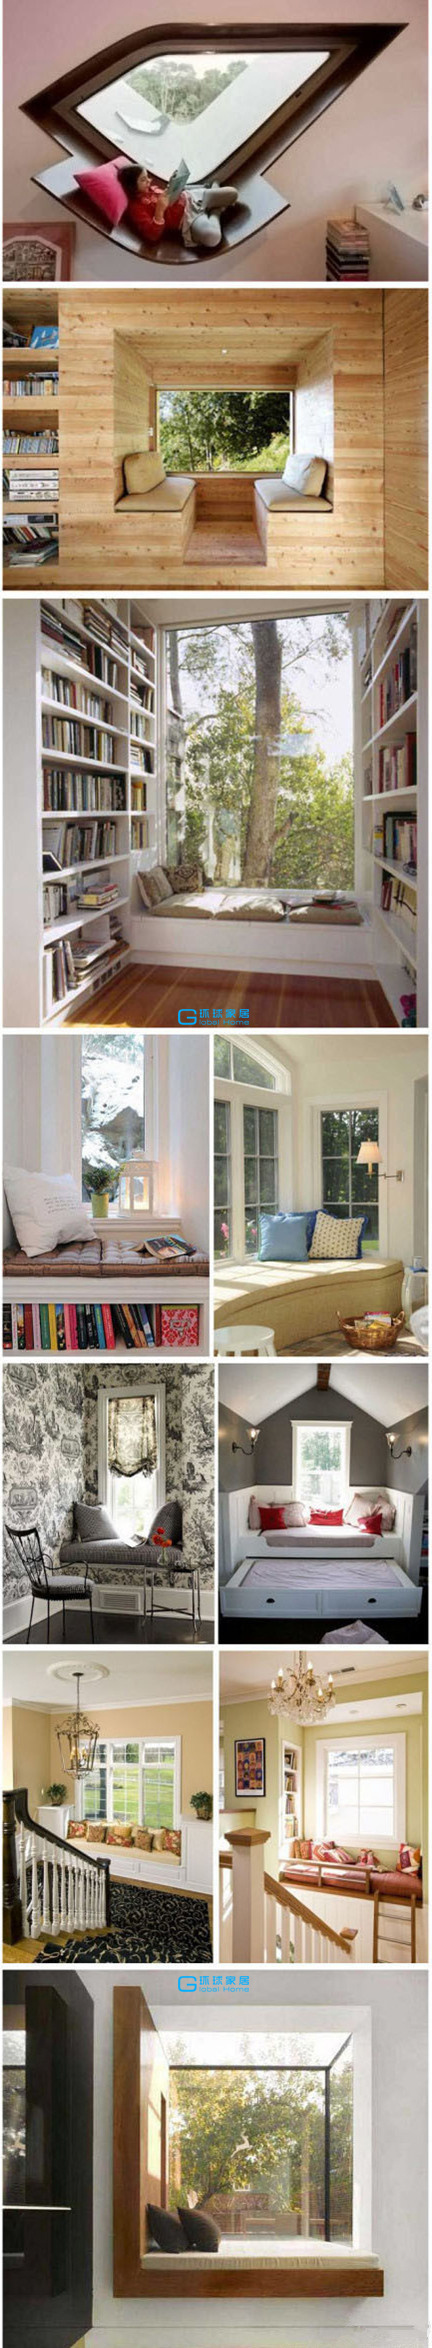 窗台 现代图片来自用户2746889121在家居创意的分享